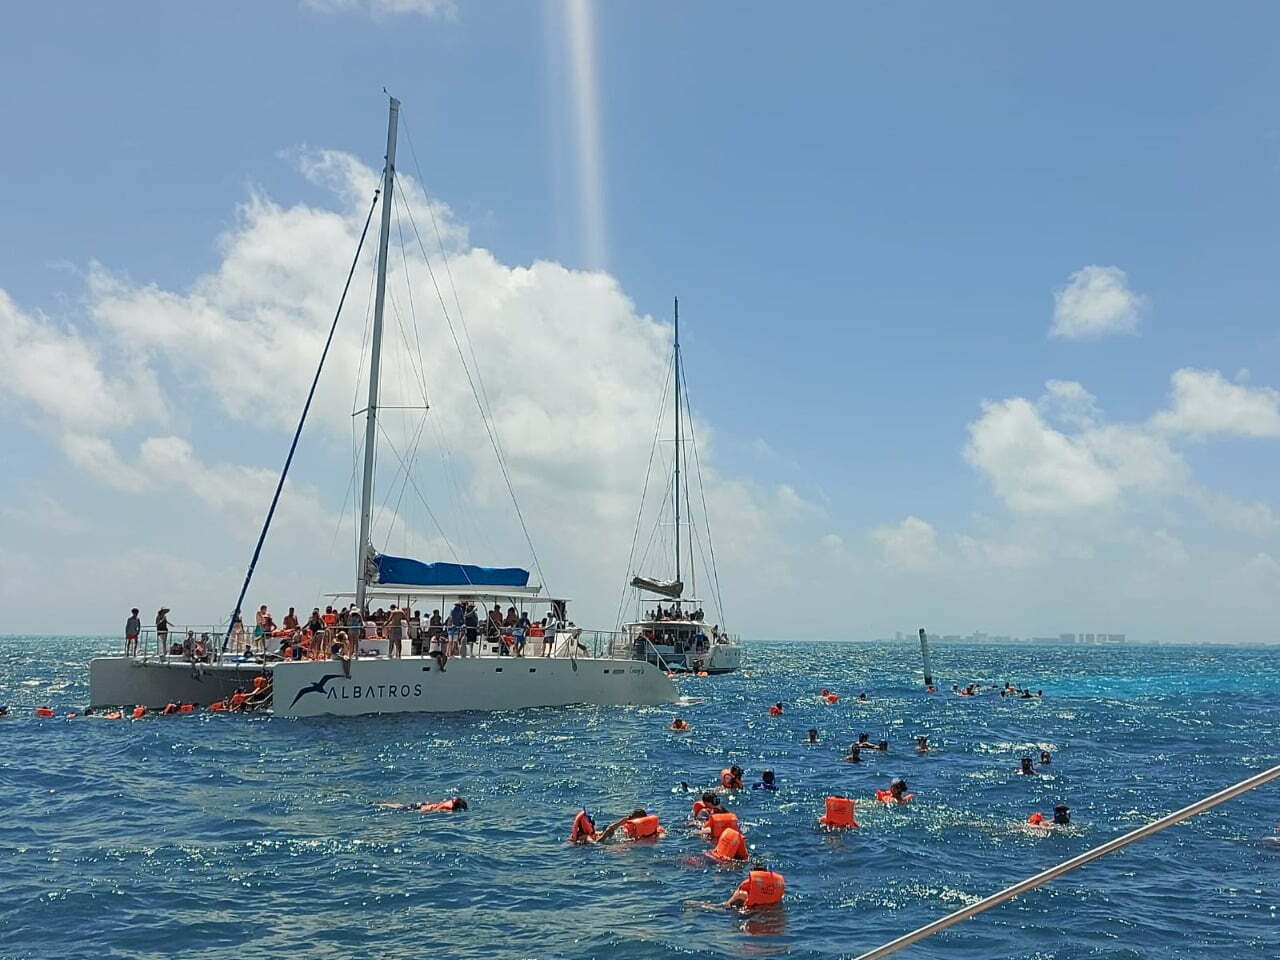 Prohíben alimentar peces durante “Snorkeling” en Isla Mujeres